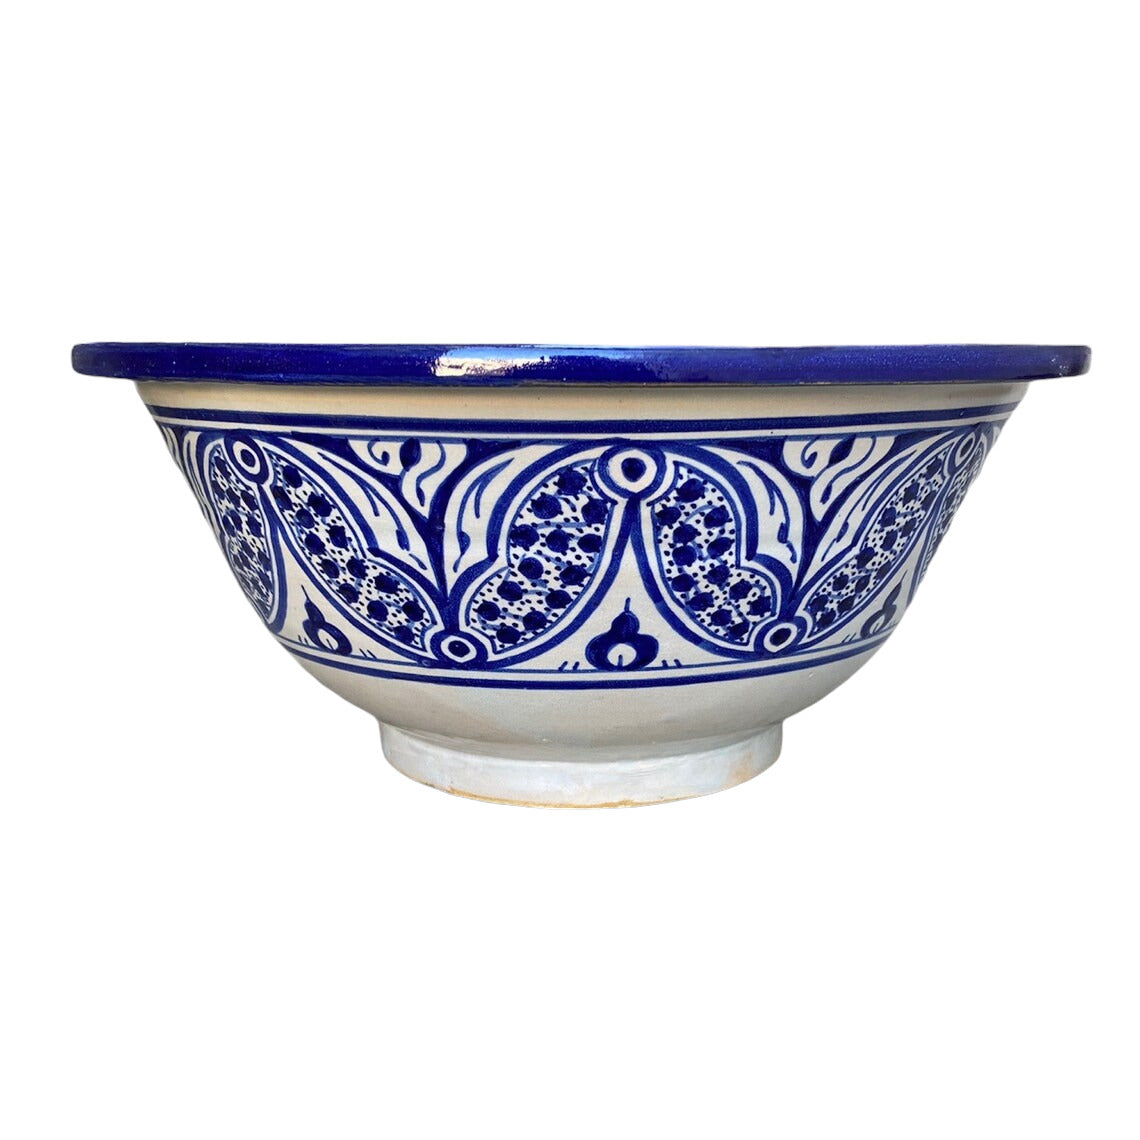 Moroccan sink | moroccan ceramic sink | bathroom sink | moroccan bathroom basin | cloakroom basin | Bleu sink #18